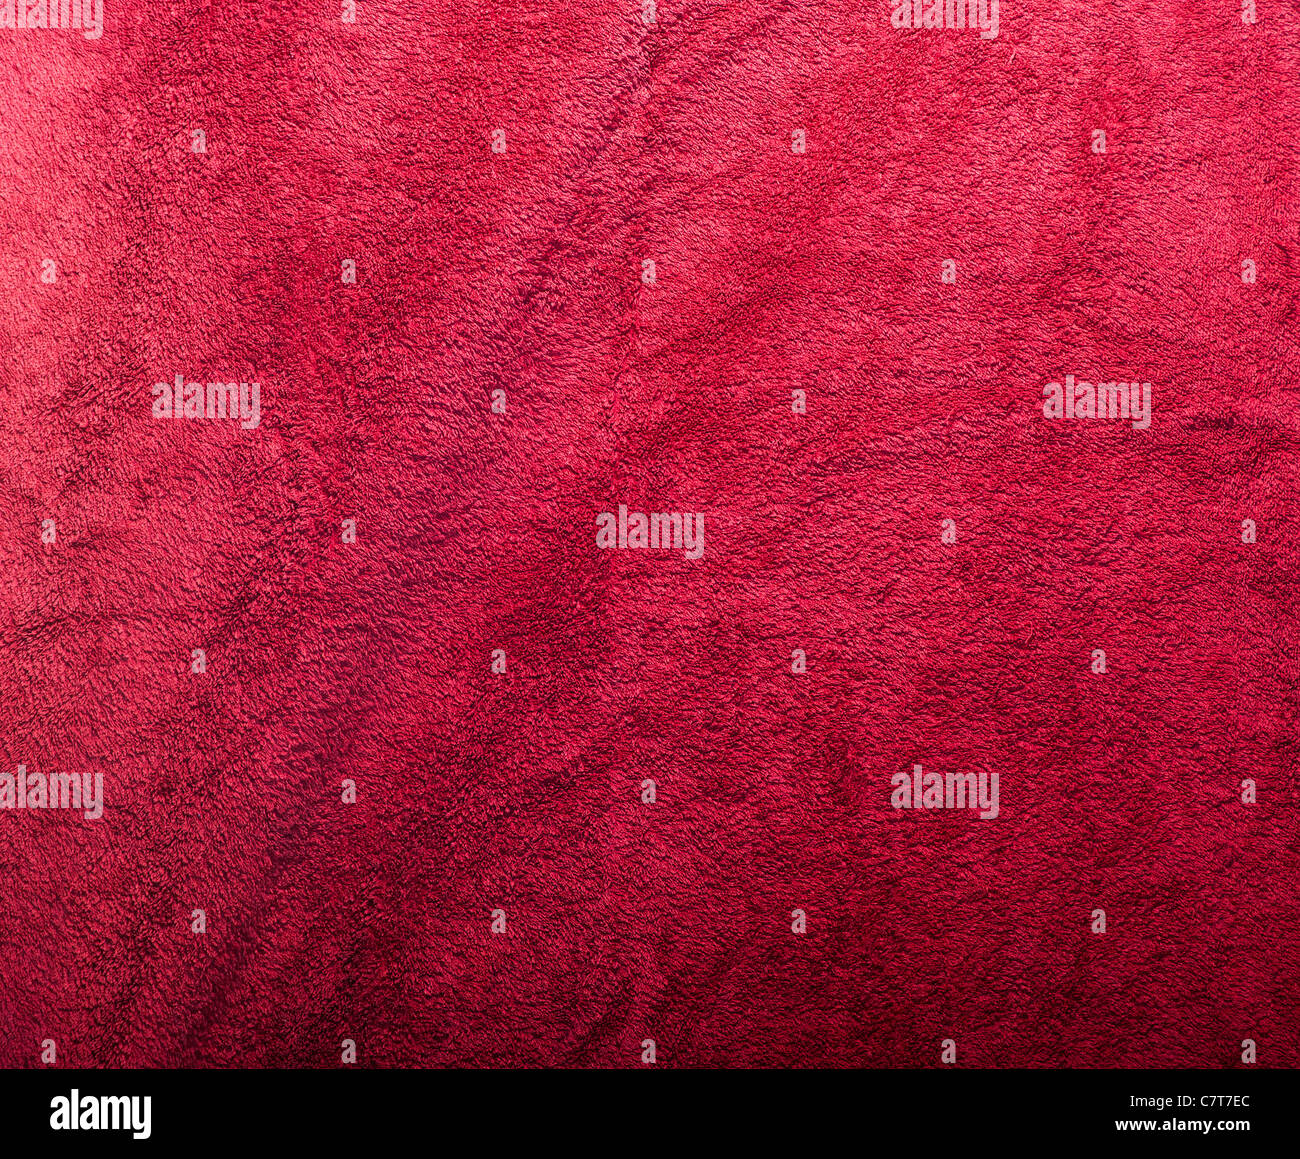 Tejido de felpa roja textura en detalle Foto de stock